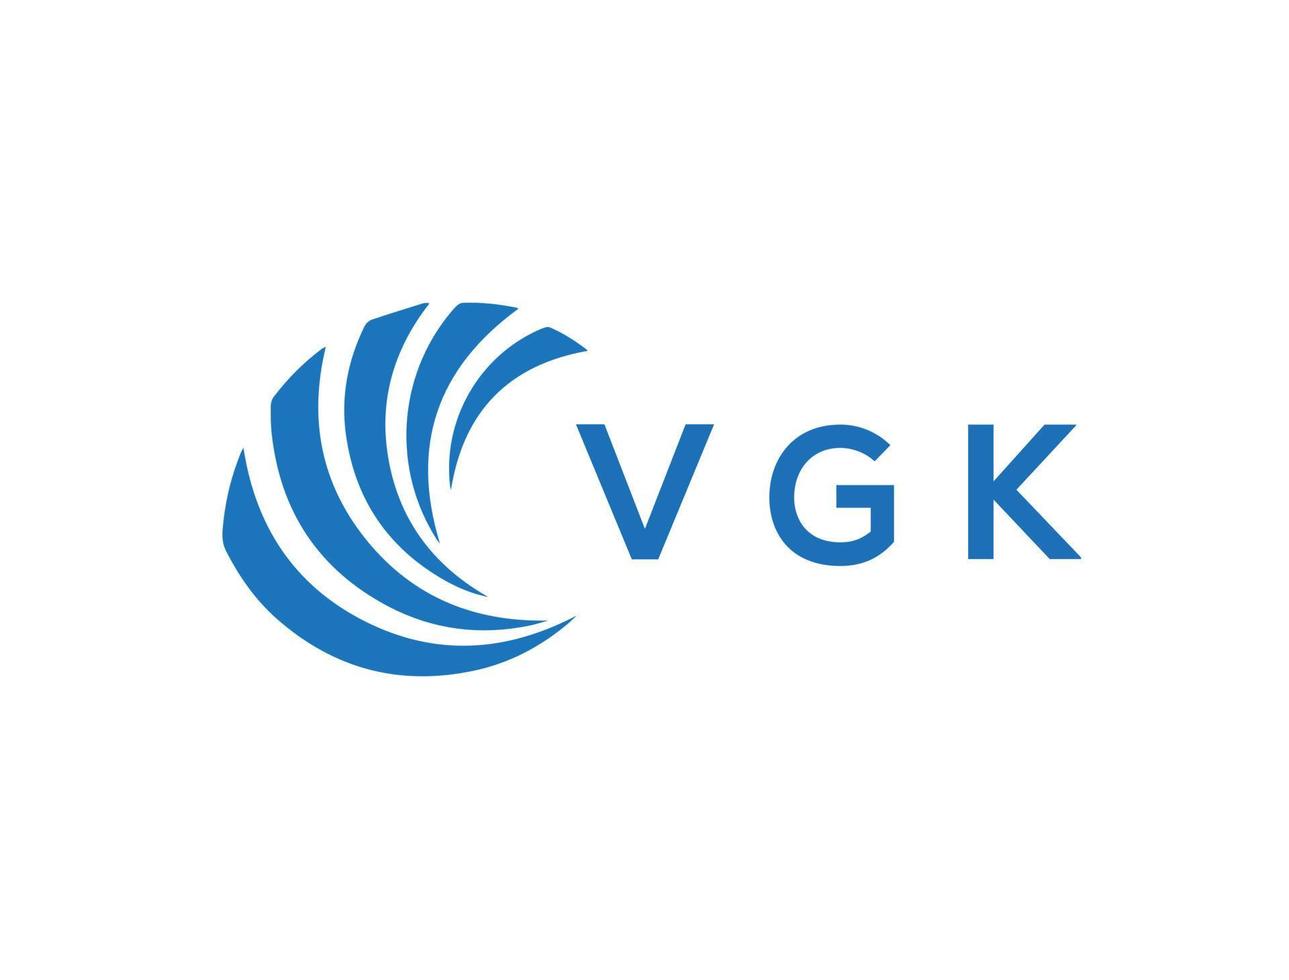 VGK letter logo design on white background. VGK creative circle letter logo concept. VGK letter design. vector